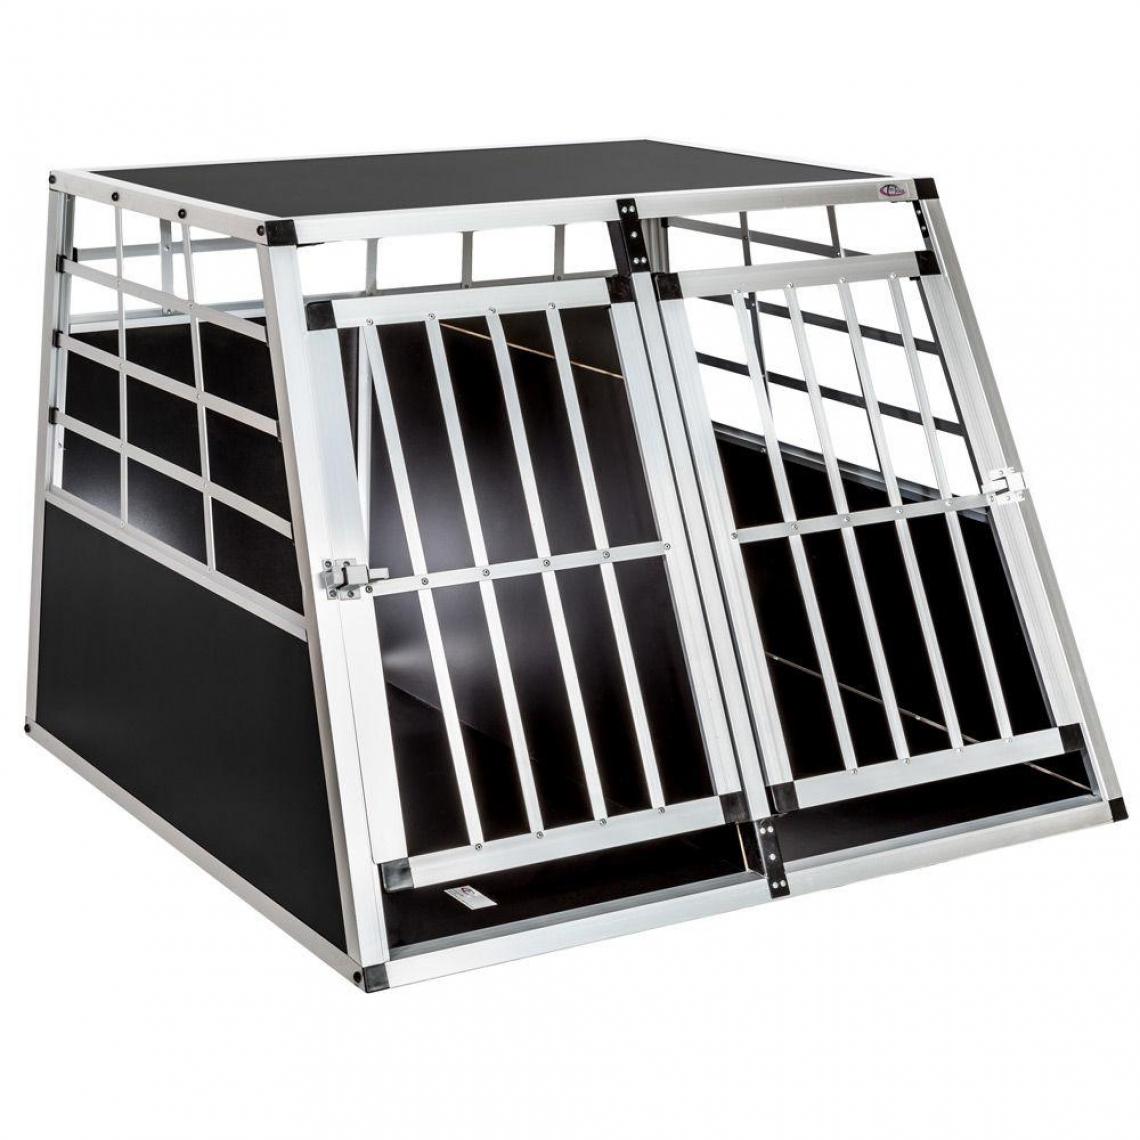 Helloshop26 - Cage de transport pour chien double dos droit 97 x 90 x 69,5 cm 3708144 - Equipement de transport pour chat